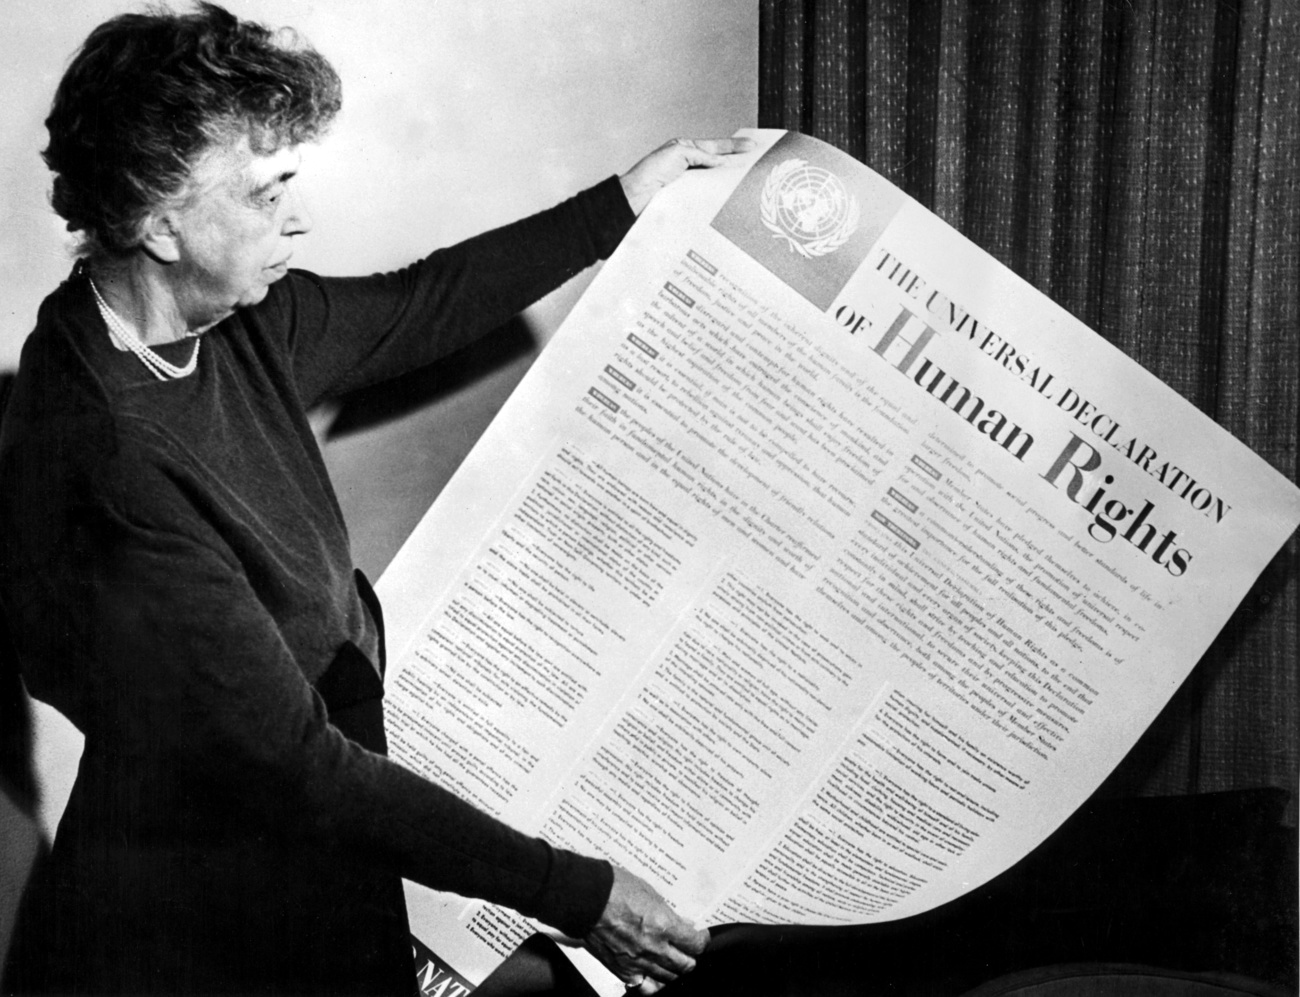 故フランクリン・D・ルーズベルト米元大統領の妻で、世界人権宣言の起草委員会の委員長を務めたエレノア・ルーズベルト氏。同委員会が作成した宣言は、性別にかかわらず、すべての人に自由闊達な生活を送る権利があると定める